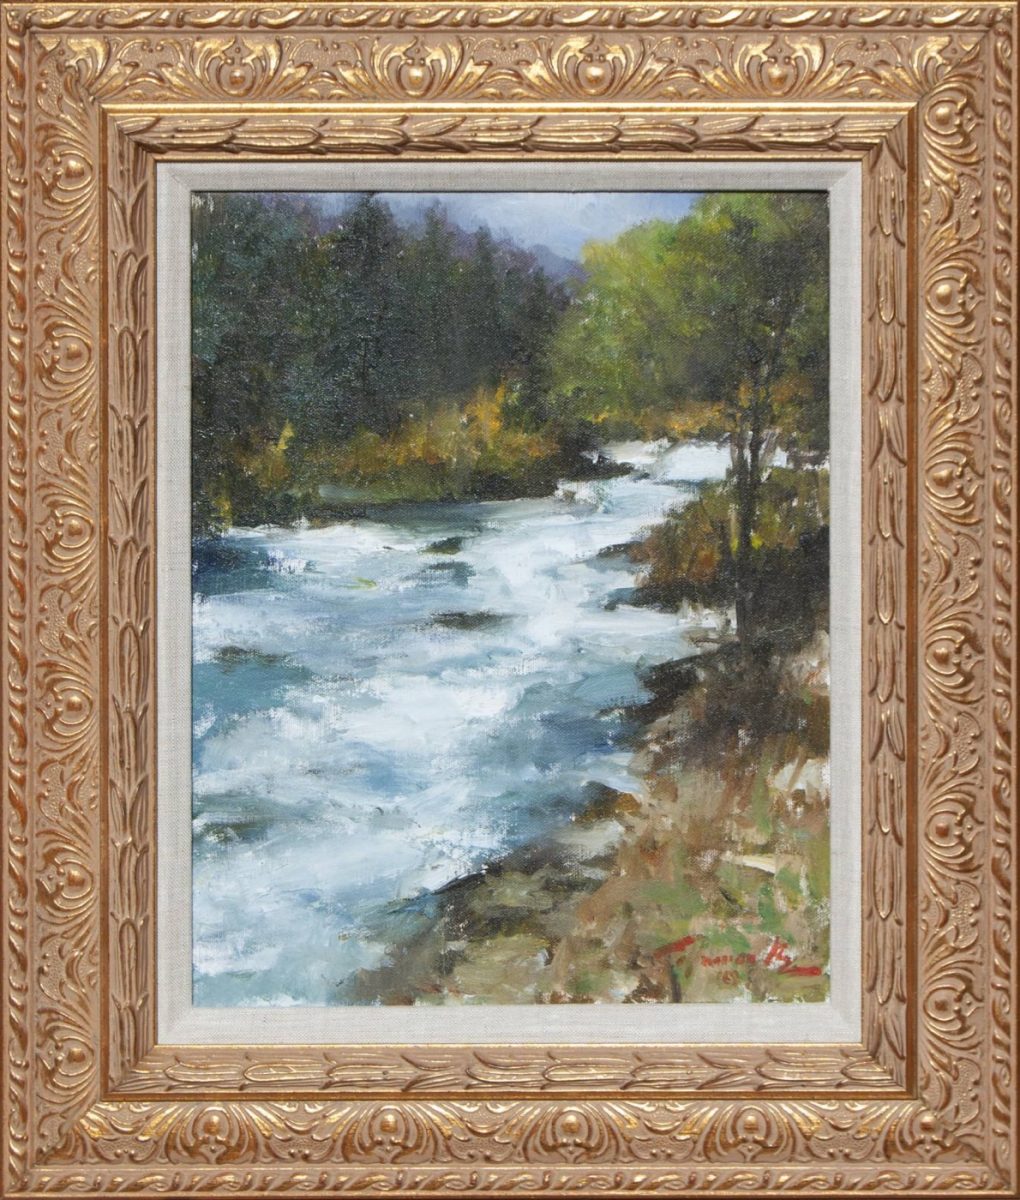 Roaring Fork Near Aspen painting by Colorado artist Ramon Kelley